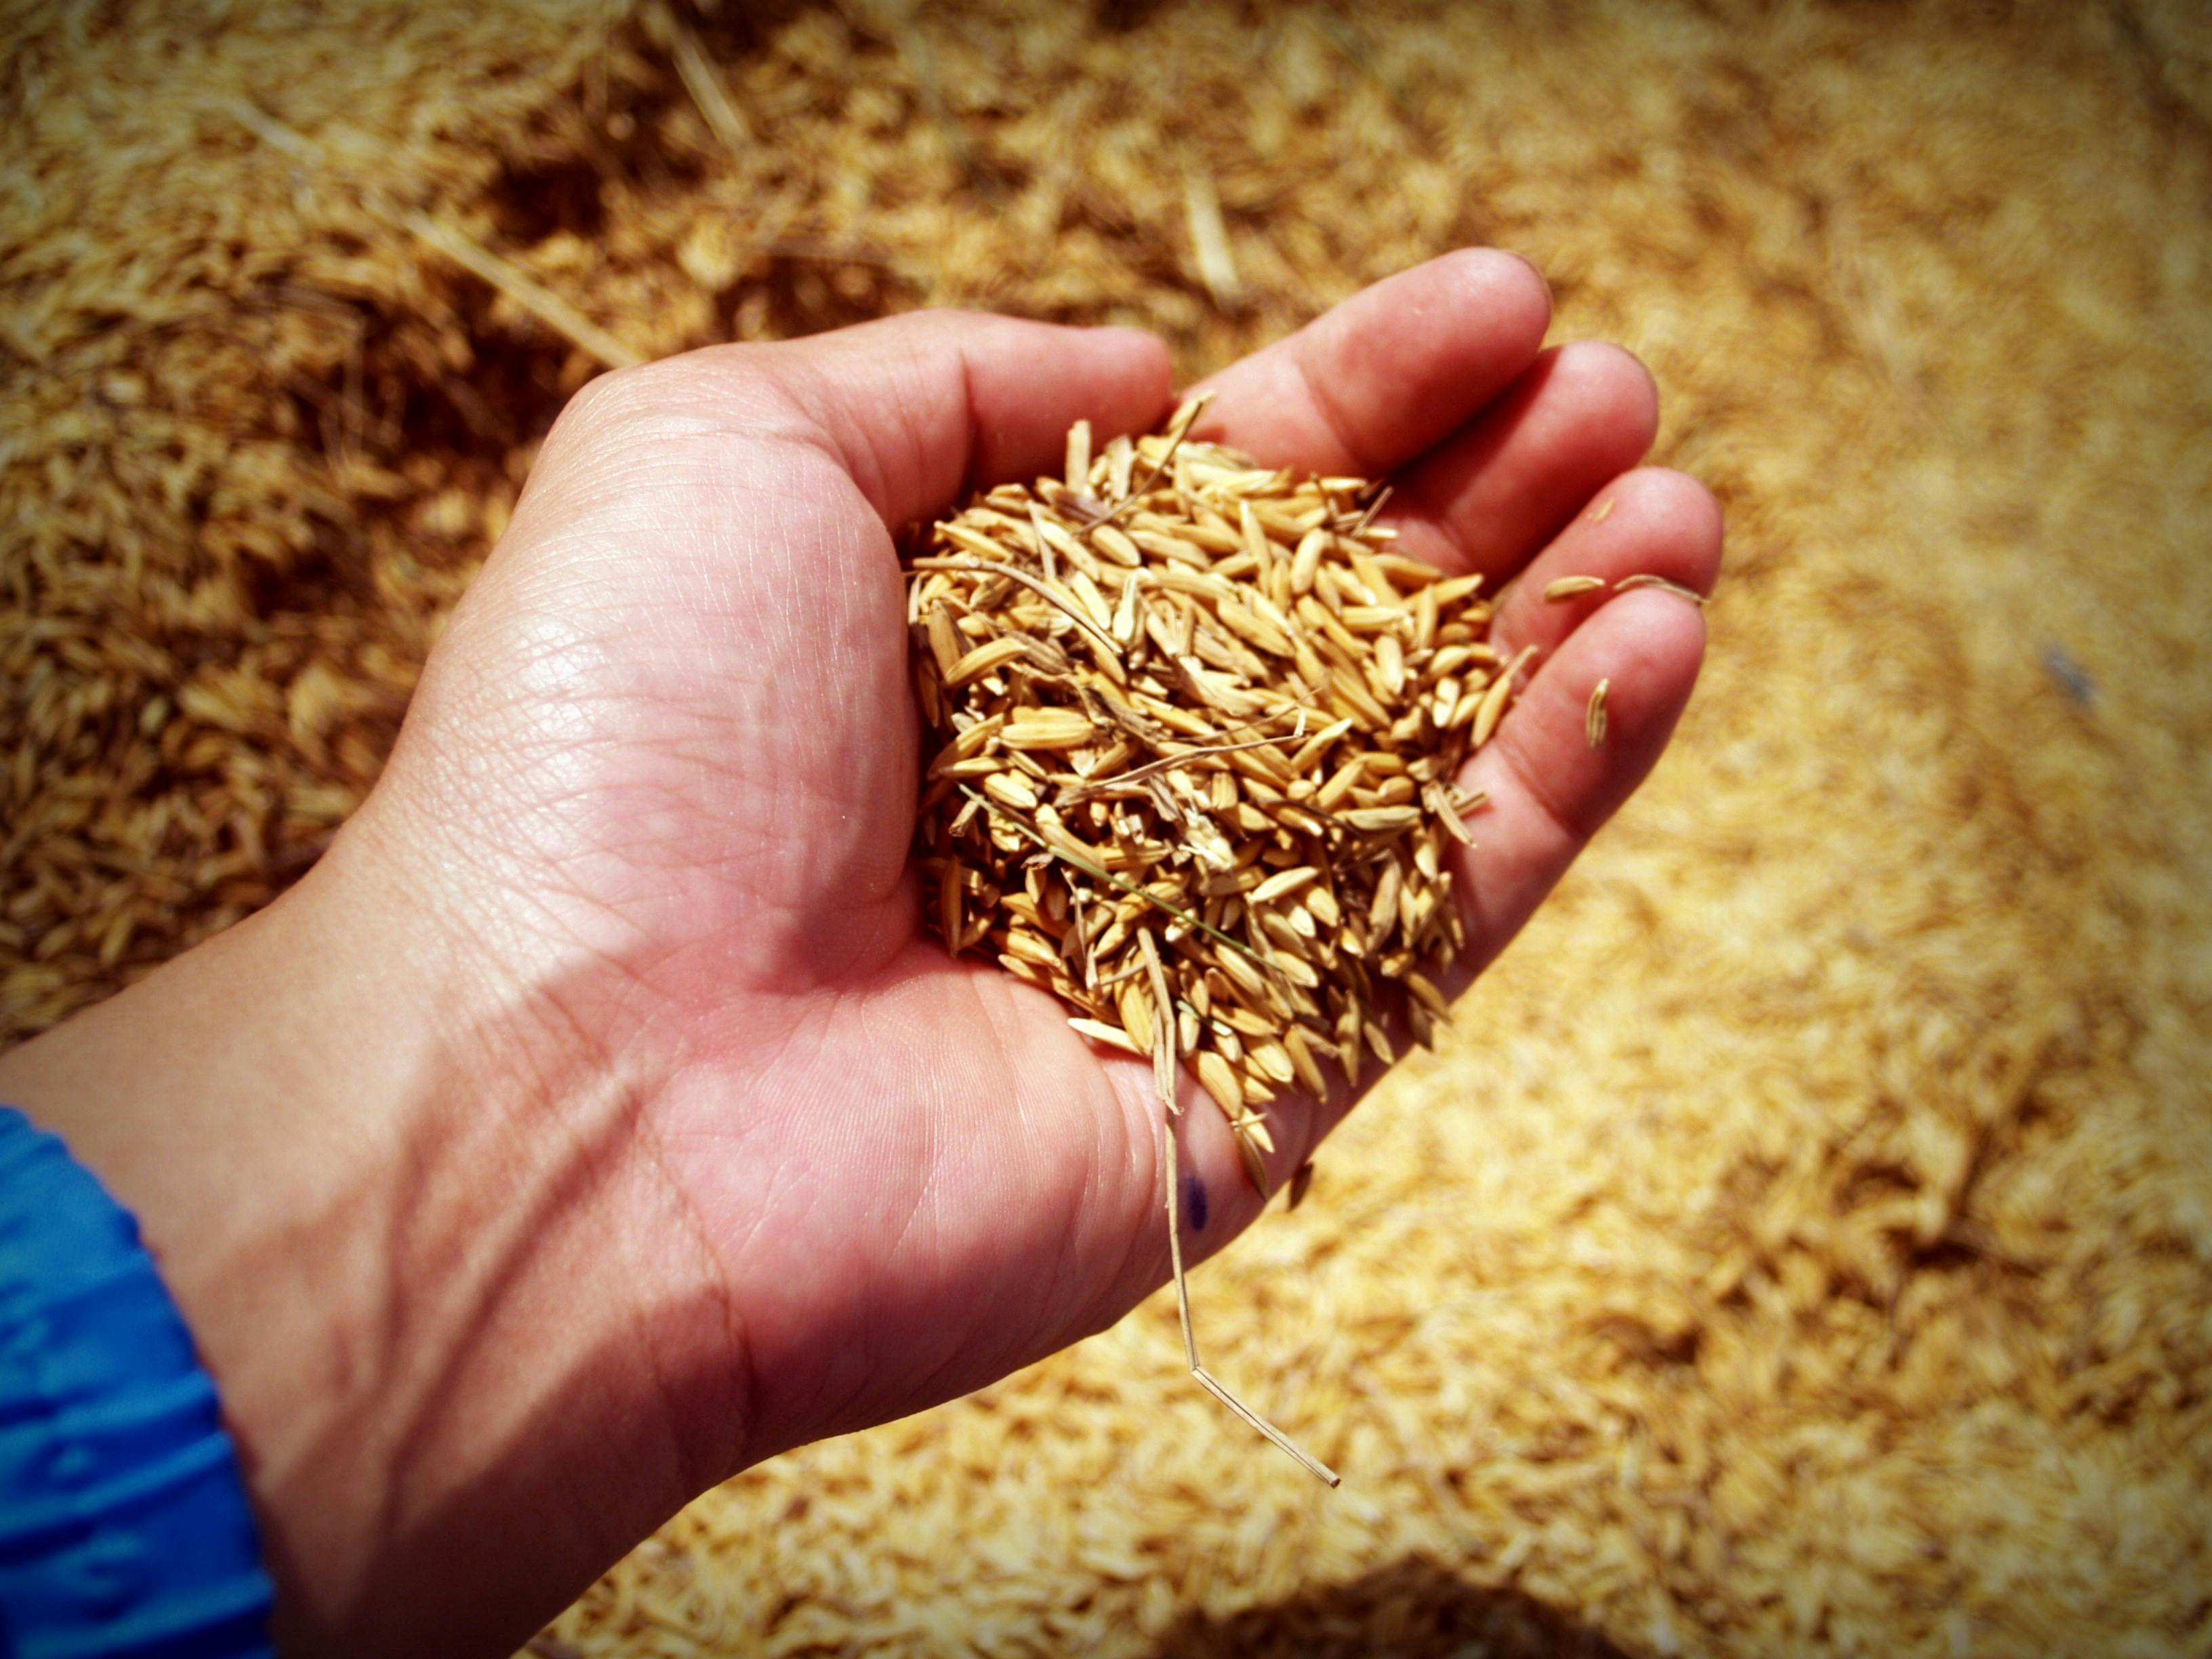 سعر الأرز الشعير الآن سعر الارز الشعير اليوم سعر طن الارز الشعير اليوم